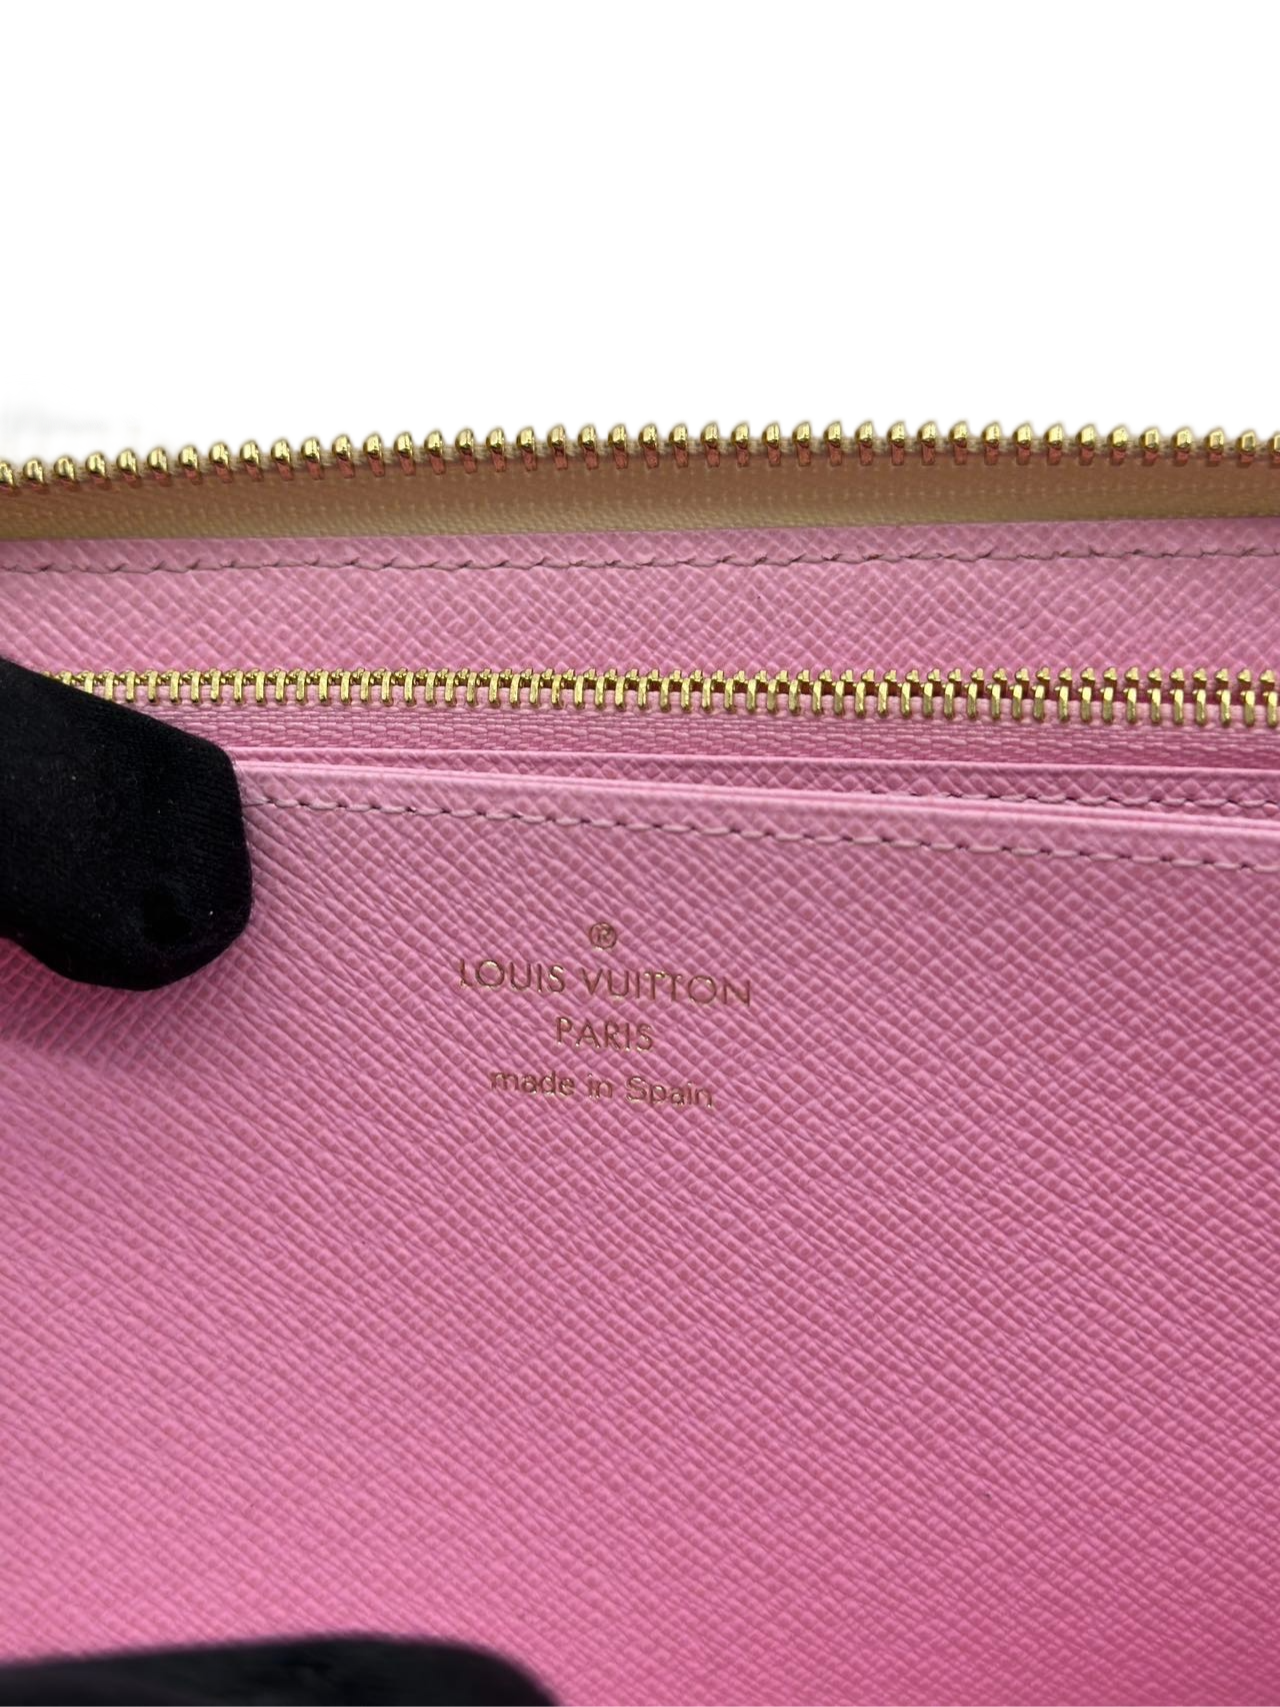 Preloved Louis Vuitton Damier Azur Wallet Purse